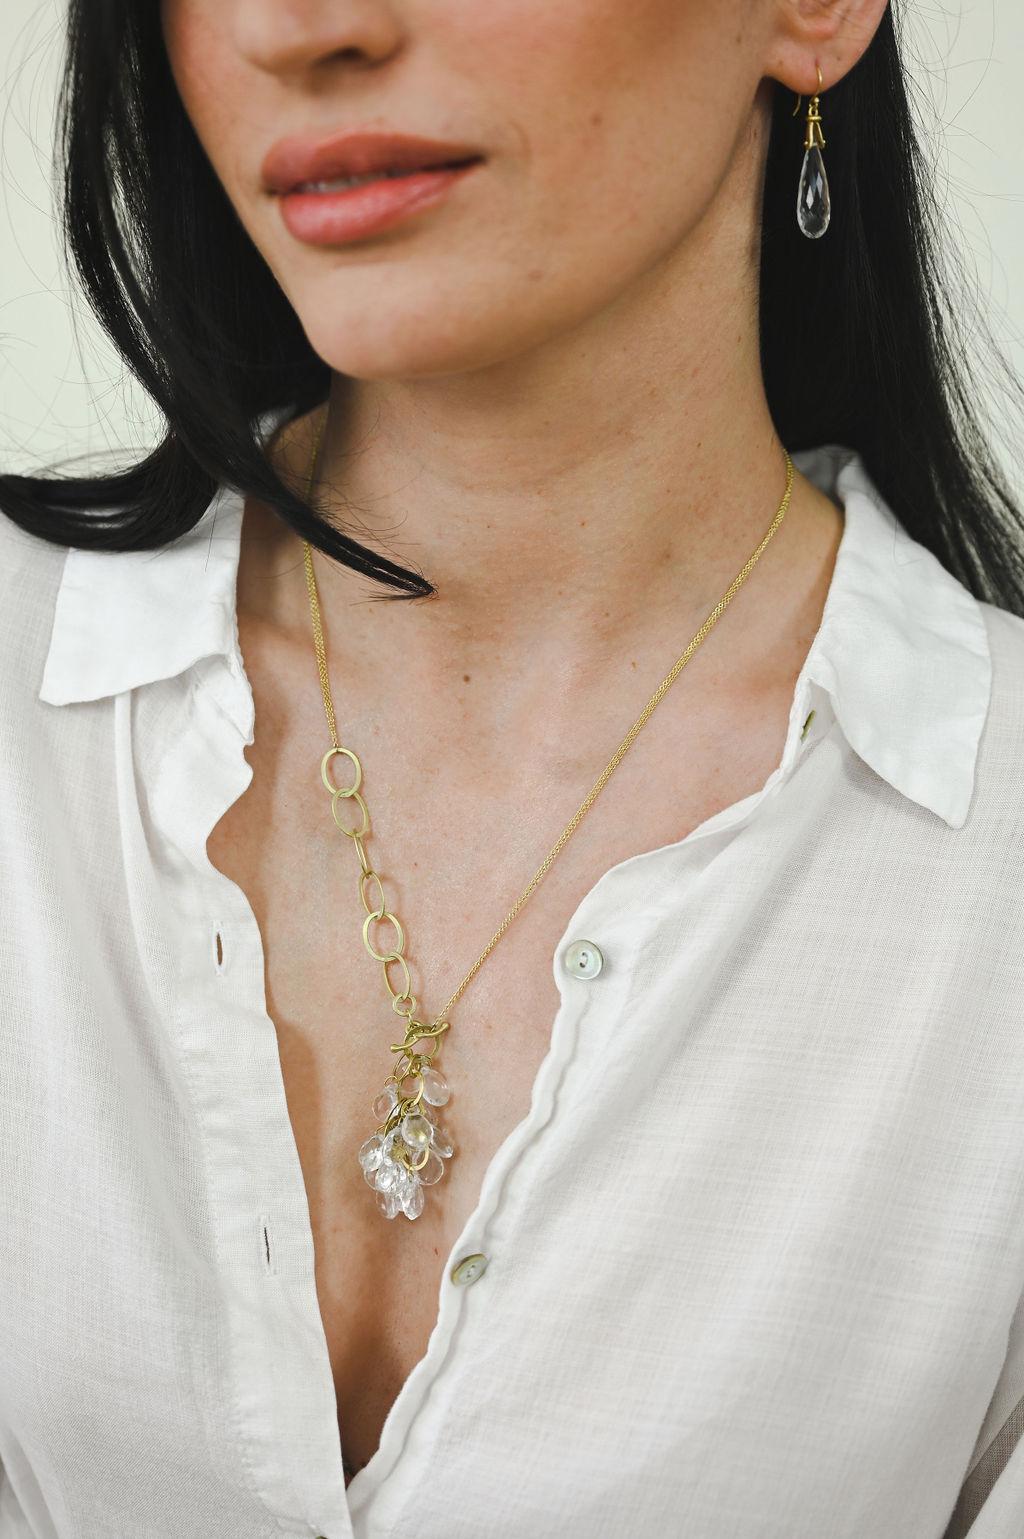 Briolette Cut Faye Kim 18 Karat Gold Rock Crystal Quartz Link Necklace For Sale